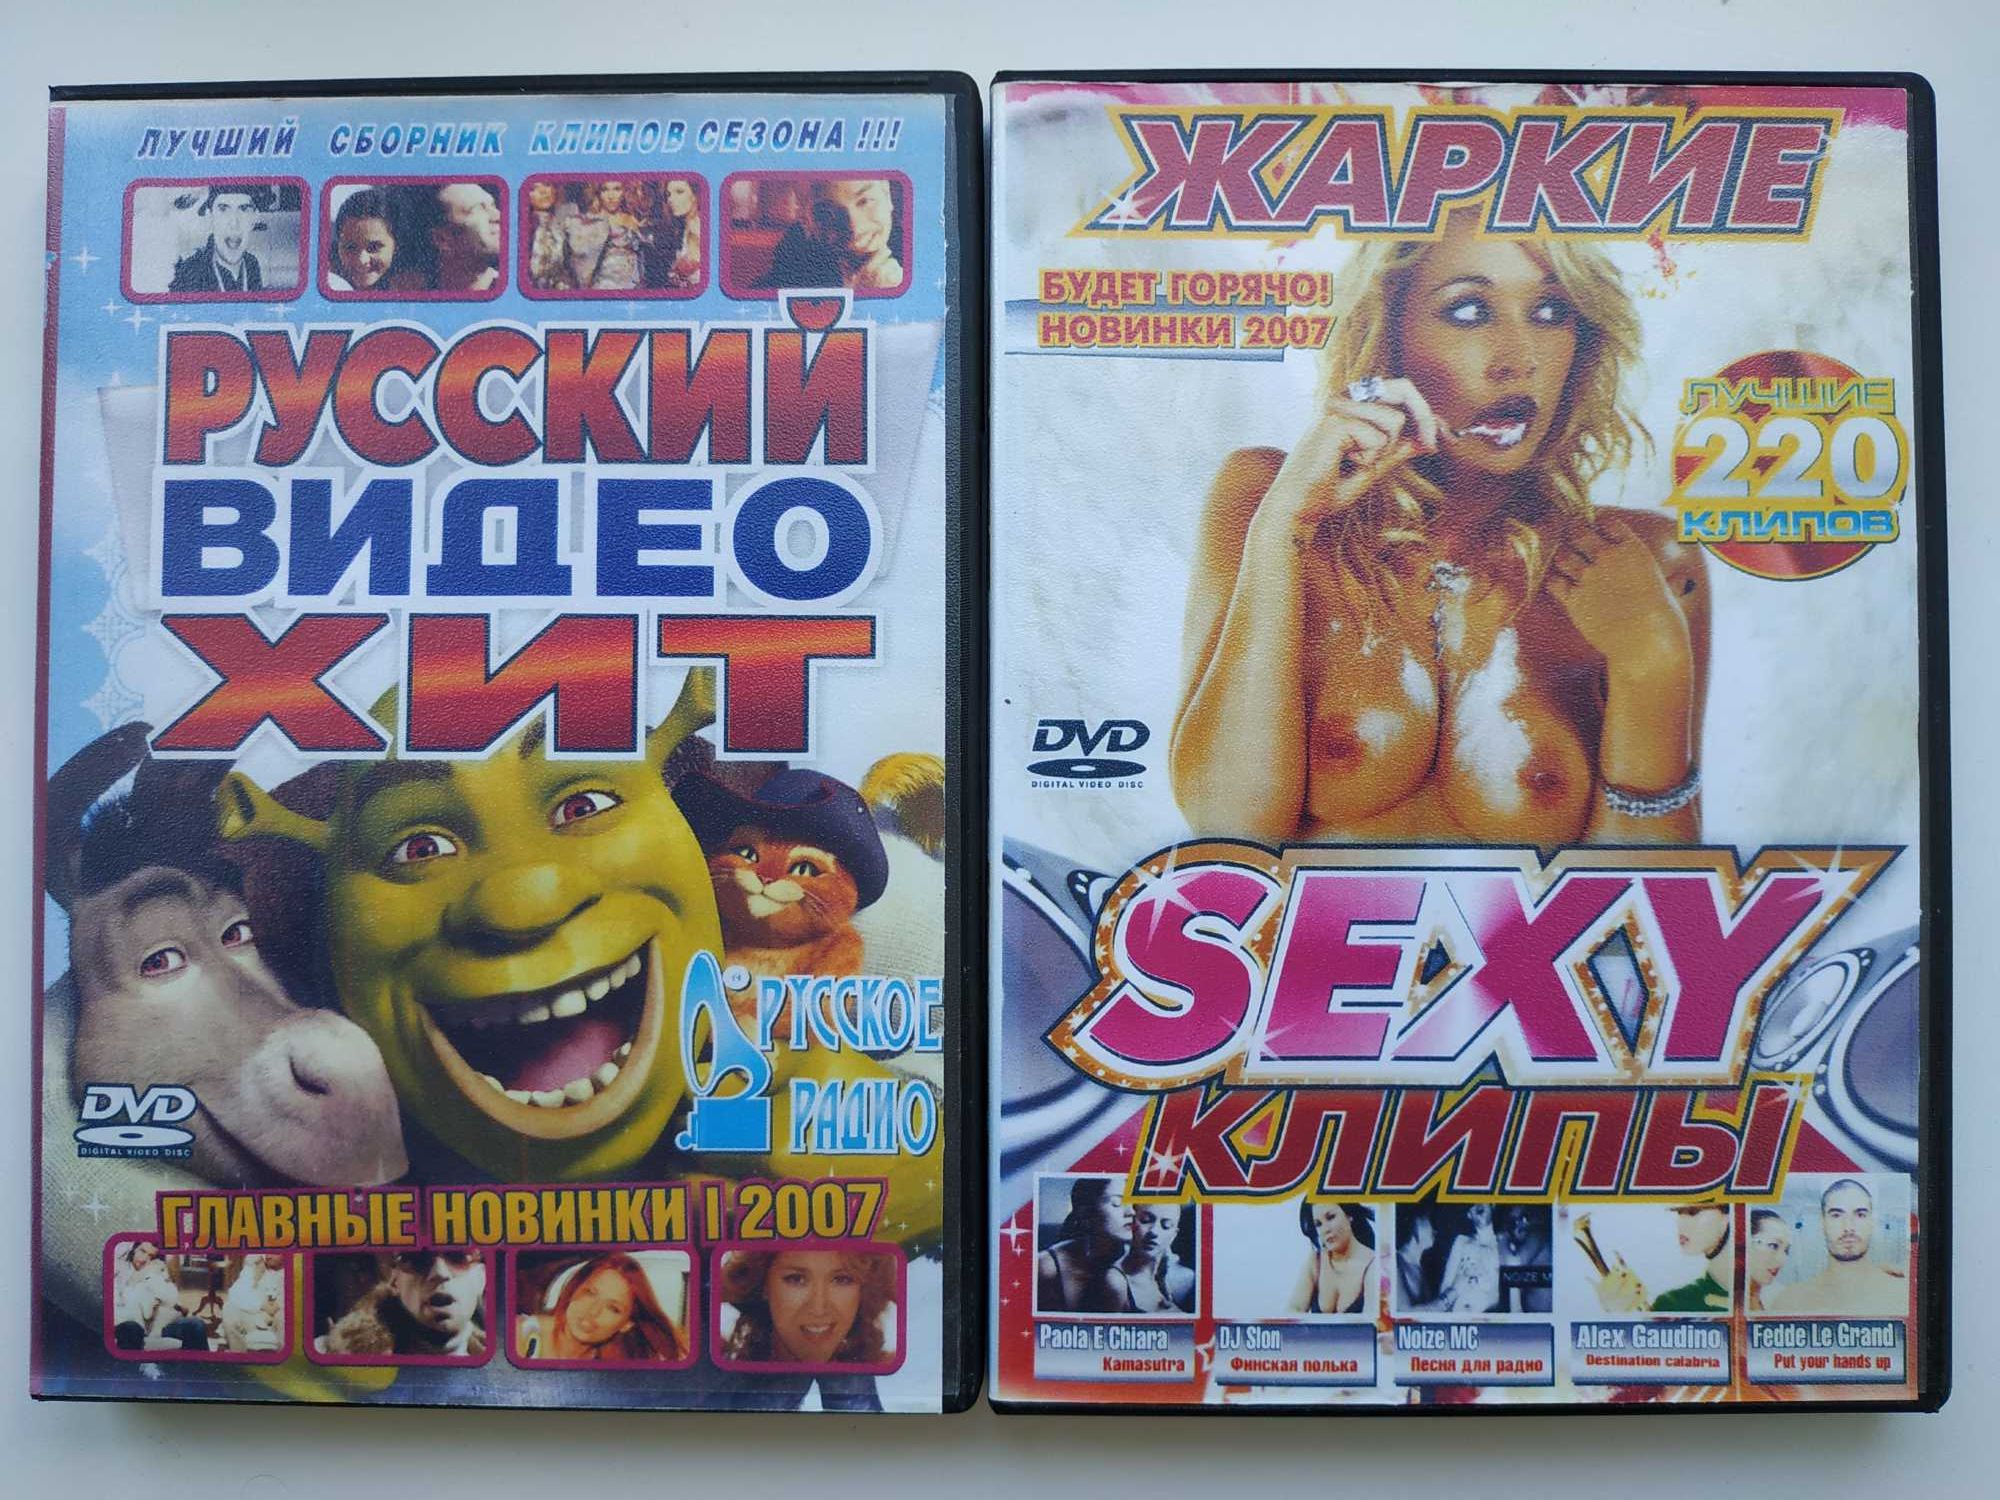 Сборники видеоклипов. Комплект из 2 DVD.